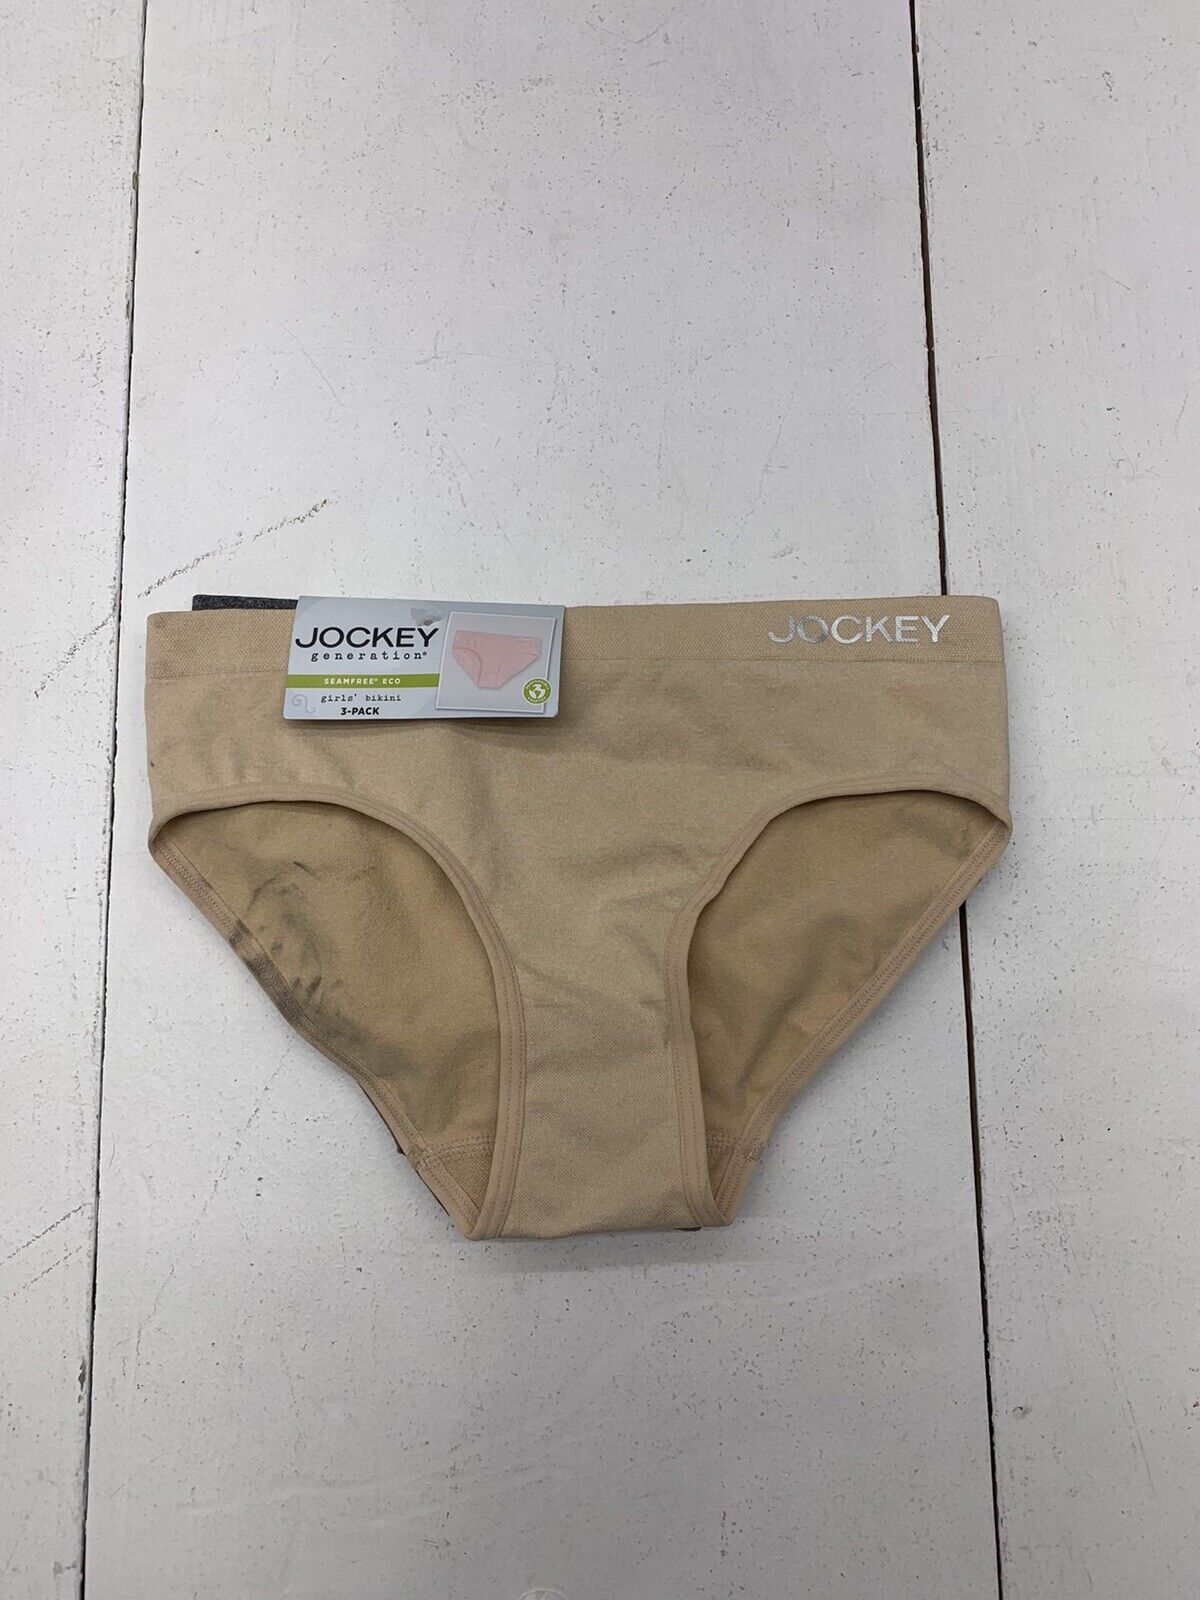 Jockey Beige Cotton Stretch Brief Underwear Womens Size Medium New - beyond  exchange